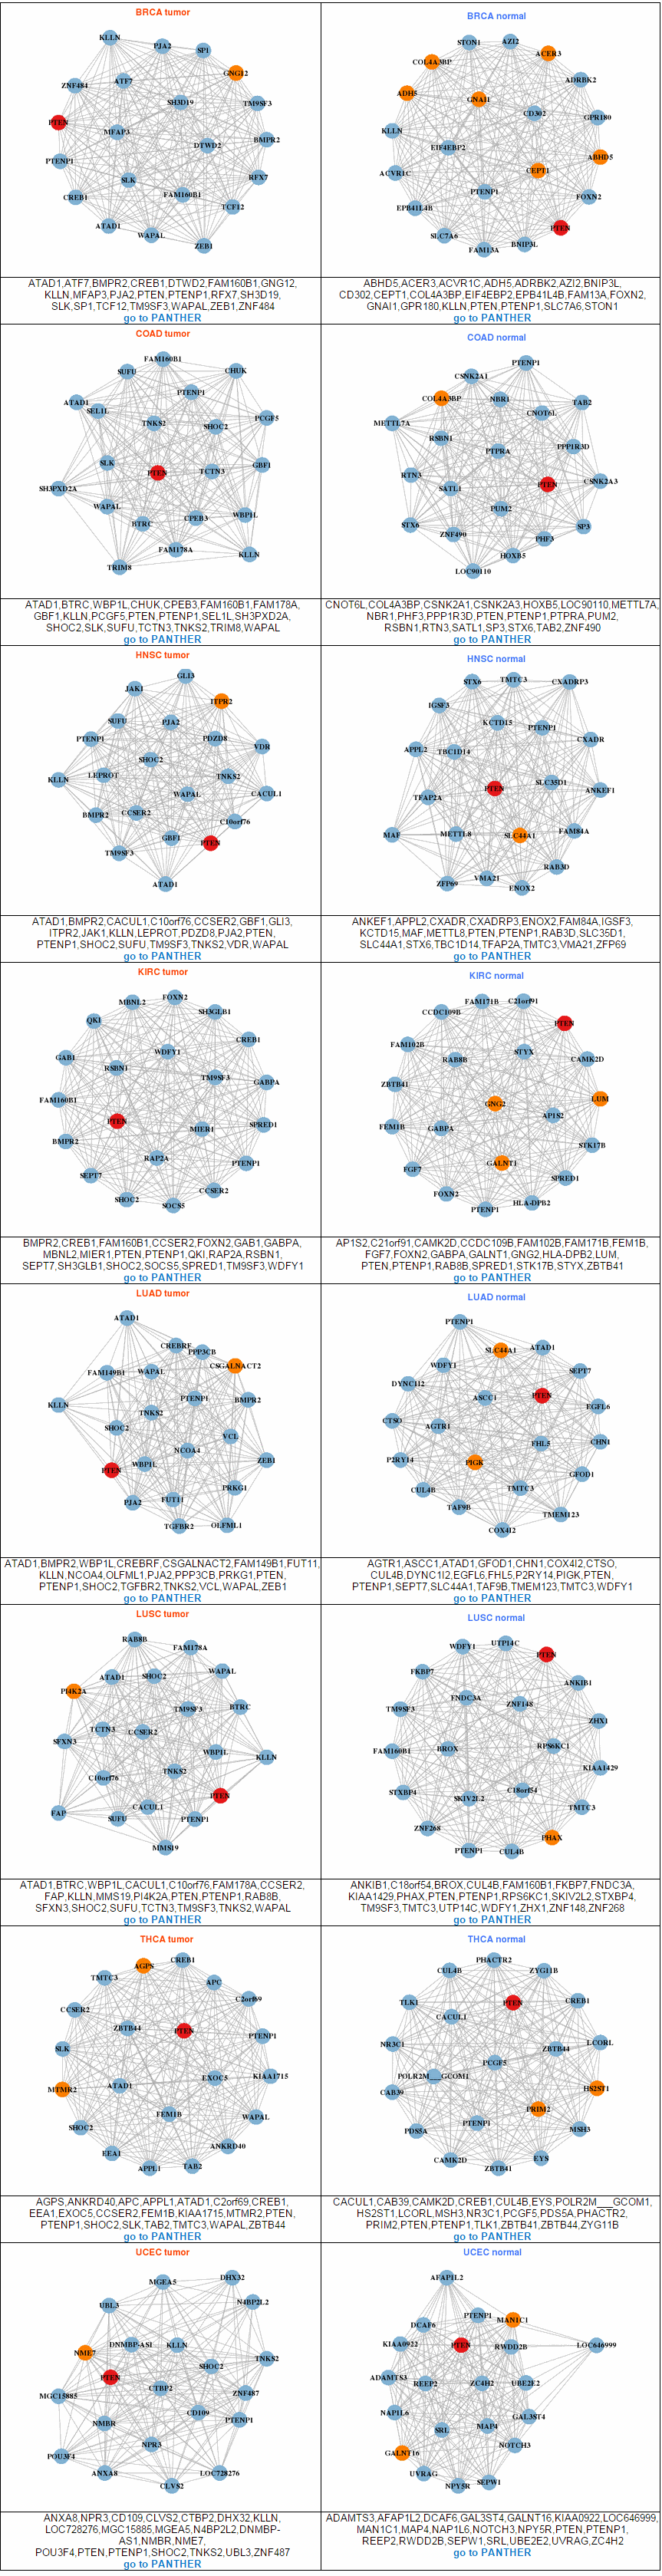 Gene Network Category